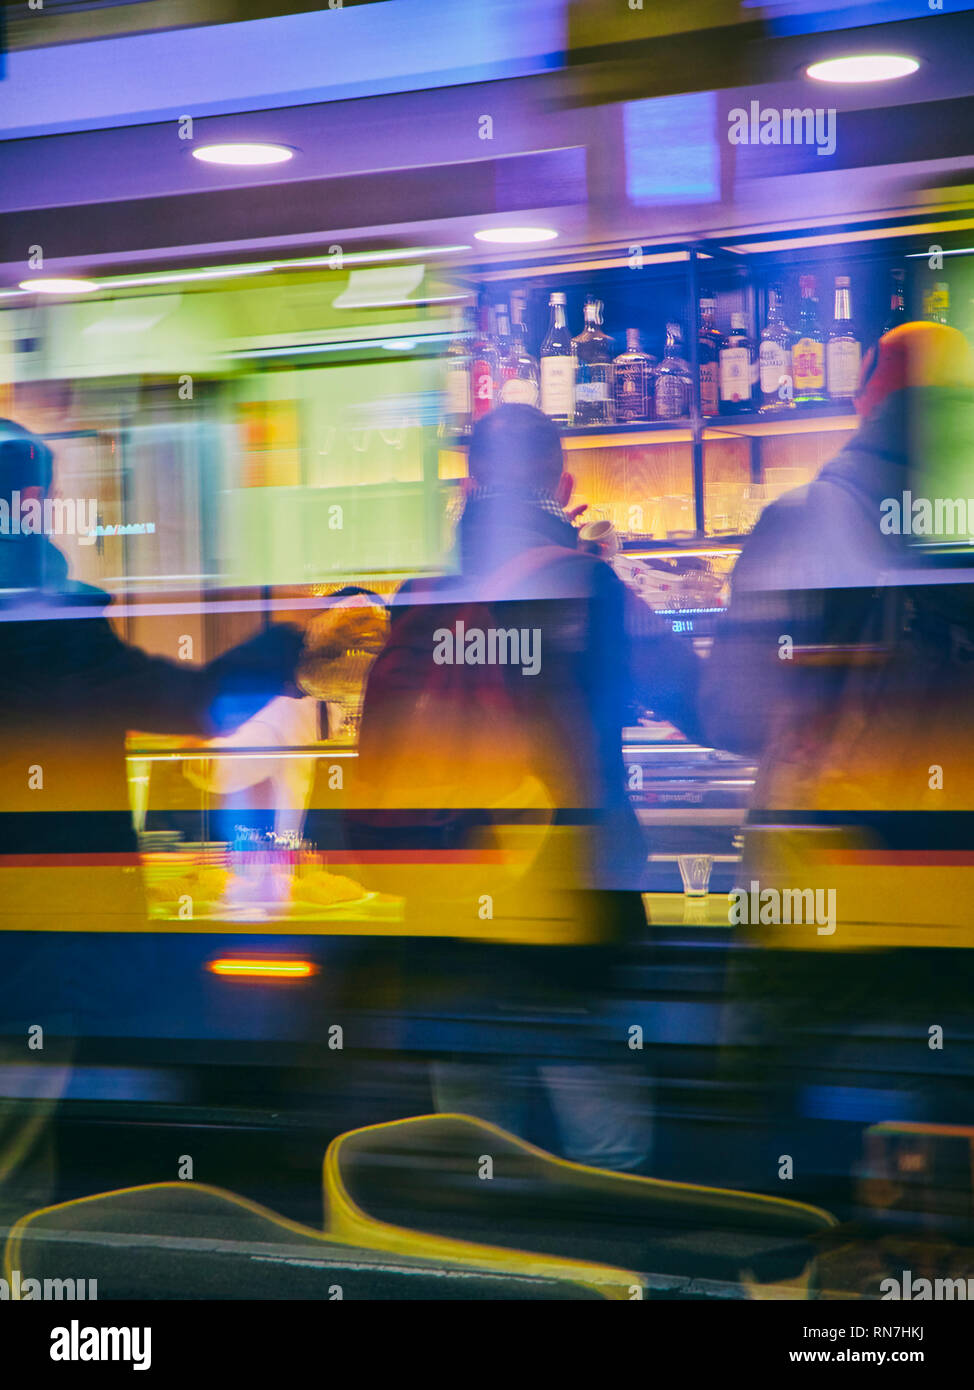 Bürger trinken einen Kaffee in einer Bar in Mailand bei Nacht. Lombardei, Italien. Blick durch die Reflexion der Fenster einer Straßenbahn. Stockfoto